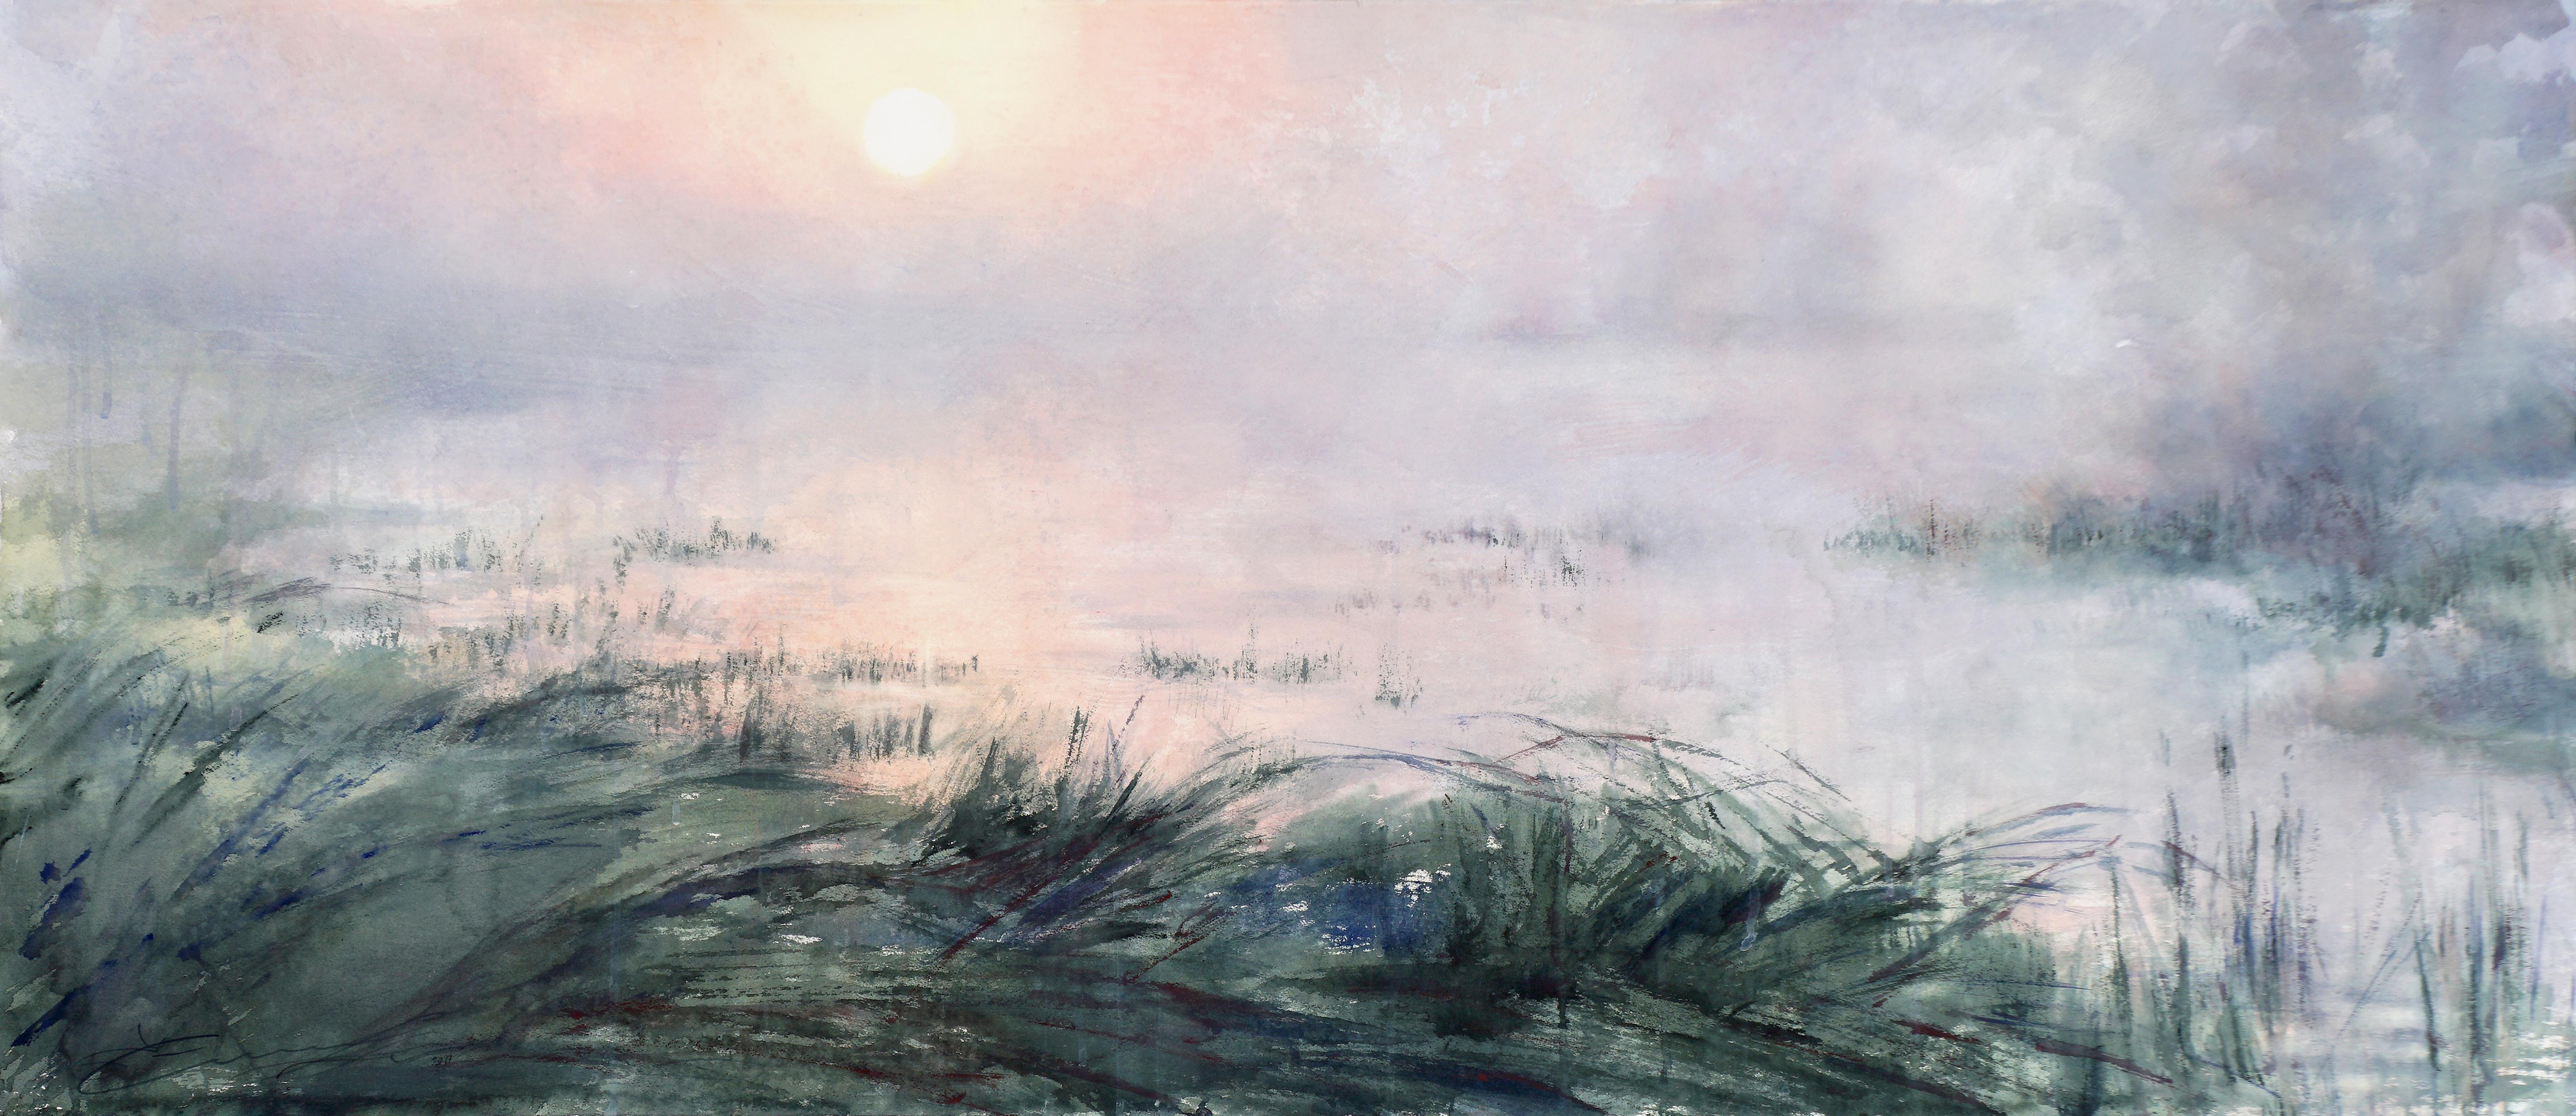 Ekaterina Smirnova Landscape Art – 6:05 Uhr - 21. Jahrhundert, Zeitgenössisch, Landschaft, Aquarell auf Papier